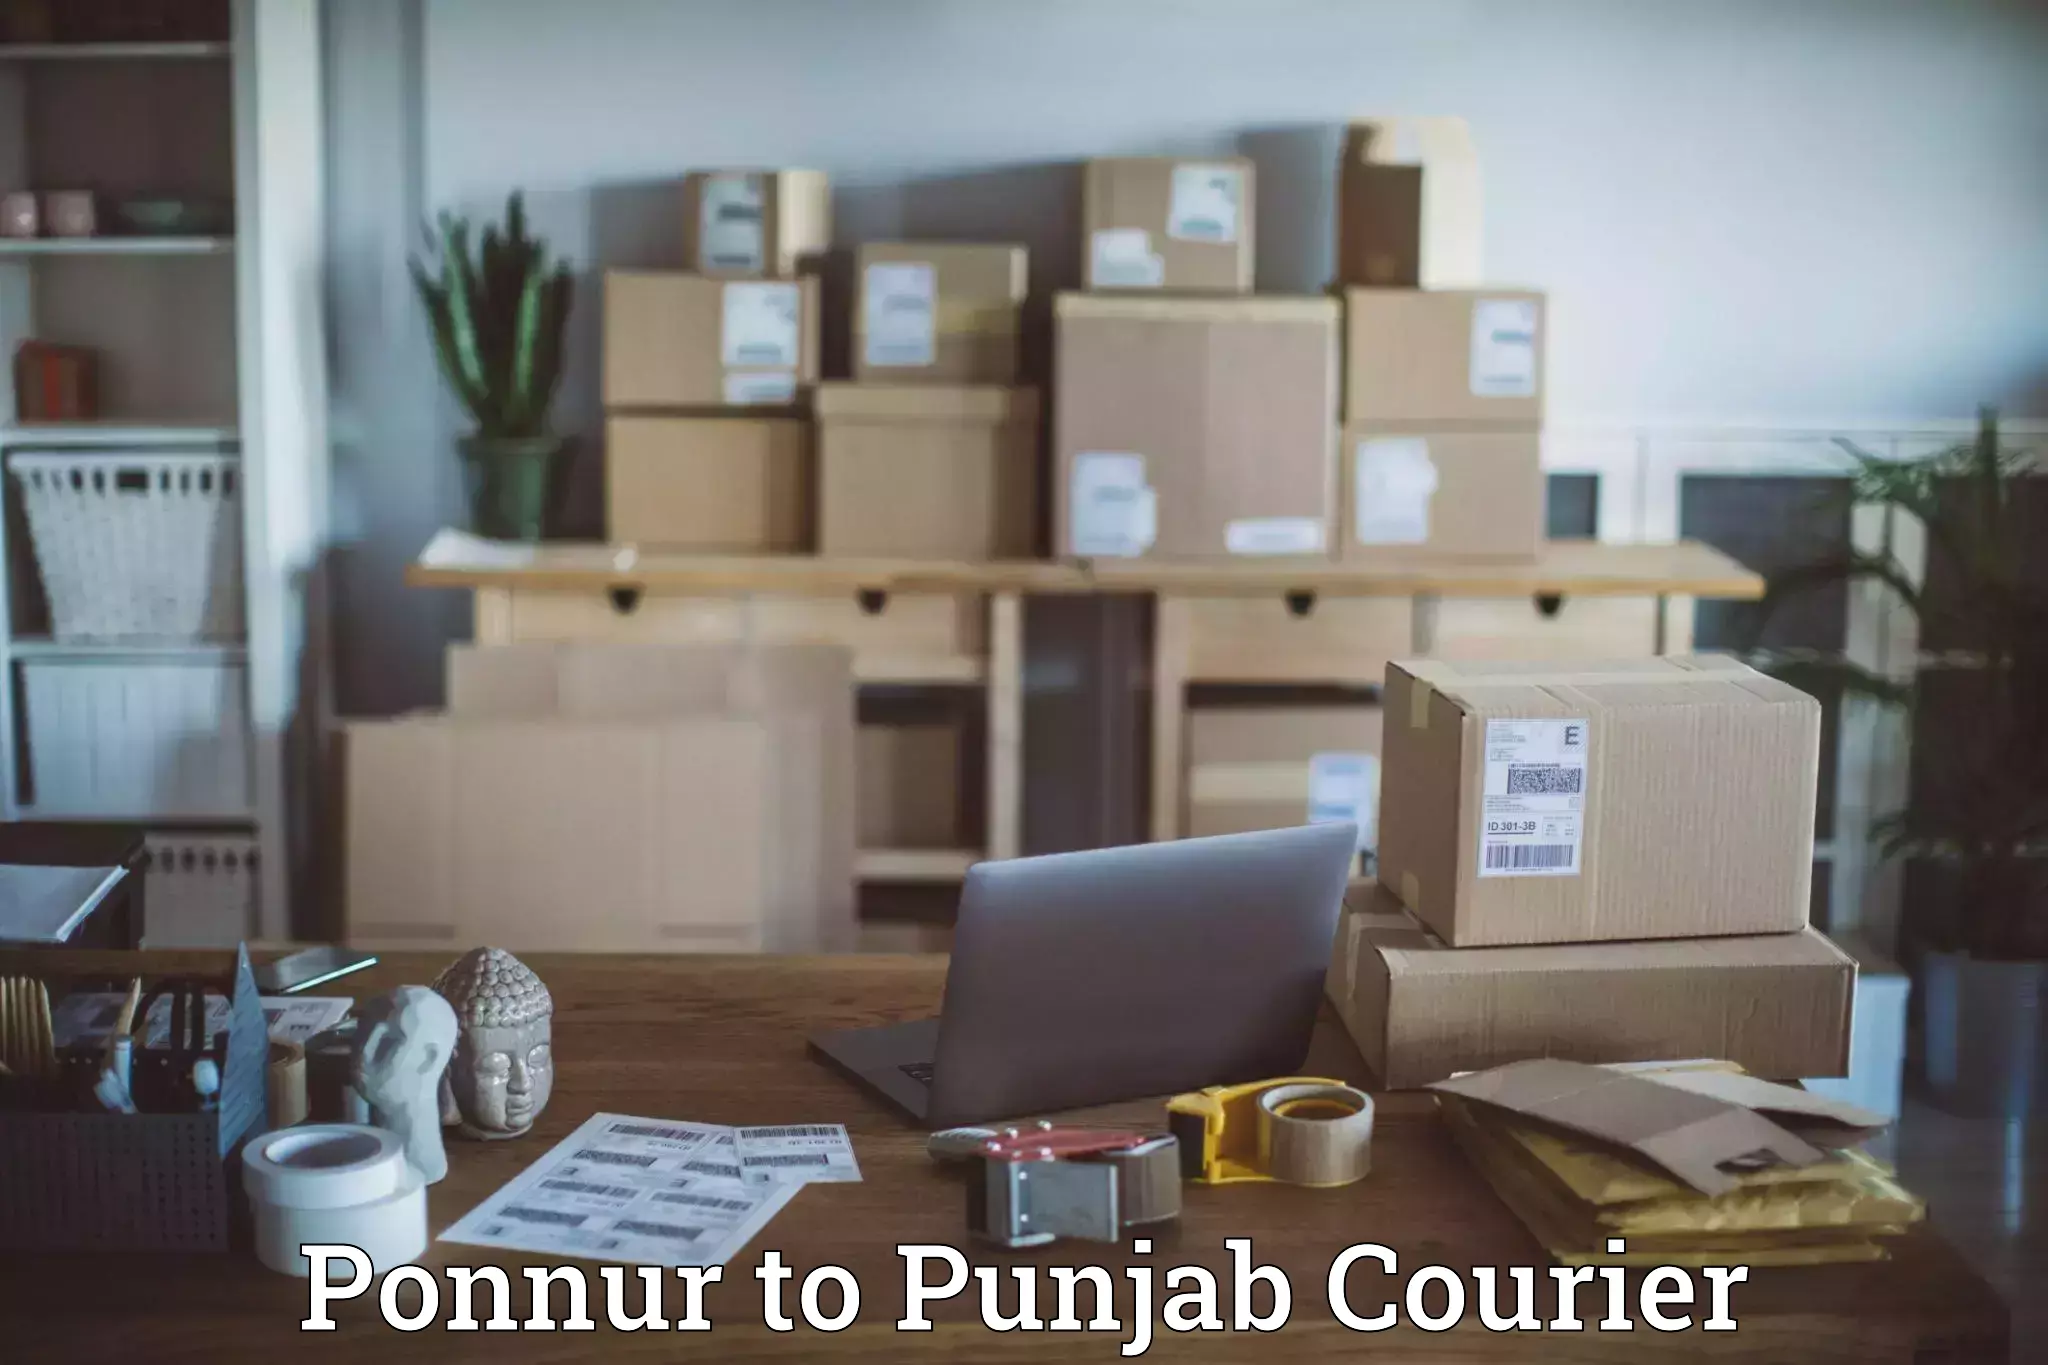 On-demand courier Ponnur to Nabha